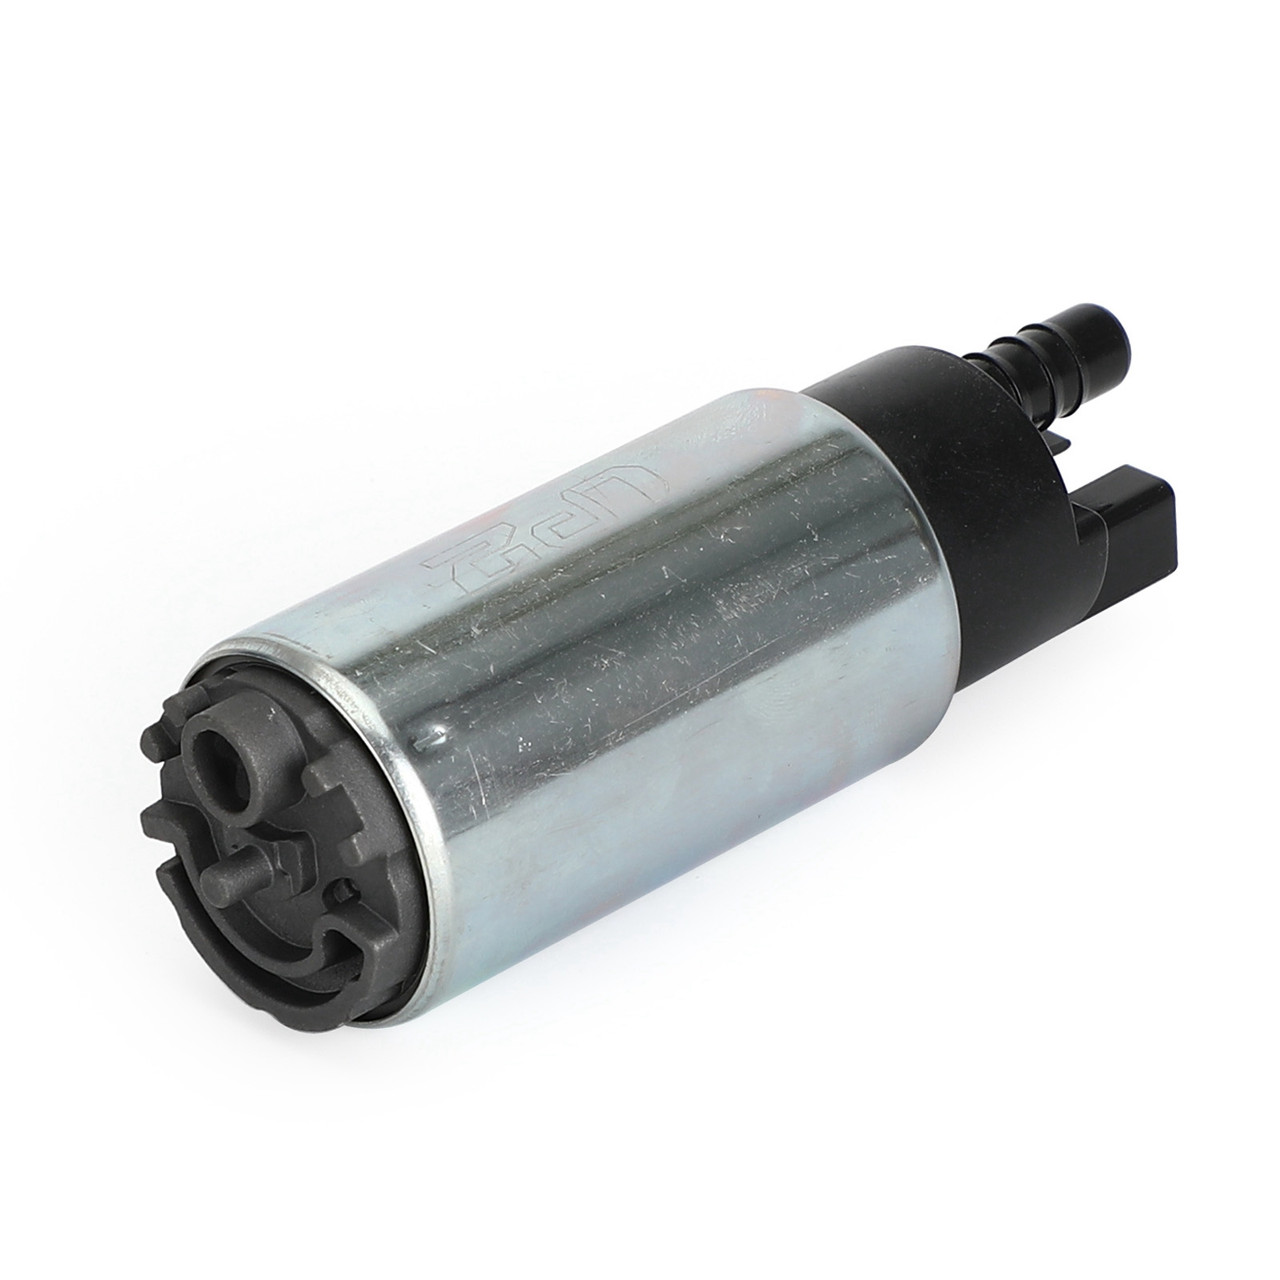 Intank EFI Fuel Pump w/ Filter Fit for BMW F650 GS R13 Dakar R13 99-07 Scrarver K14 00-05 R13 08-15 Sert?o R13 650 10-14